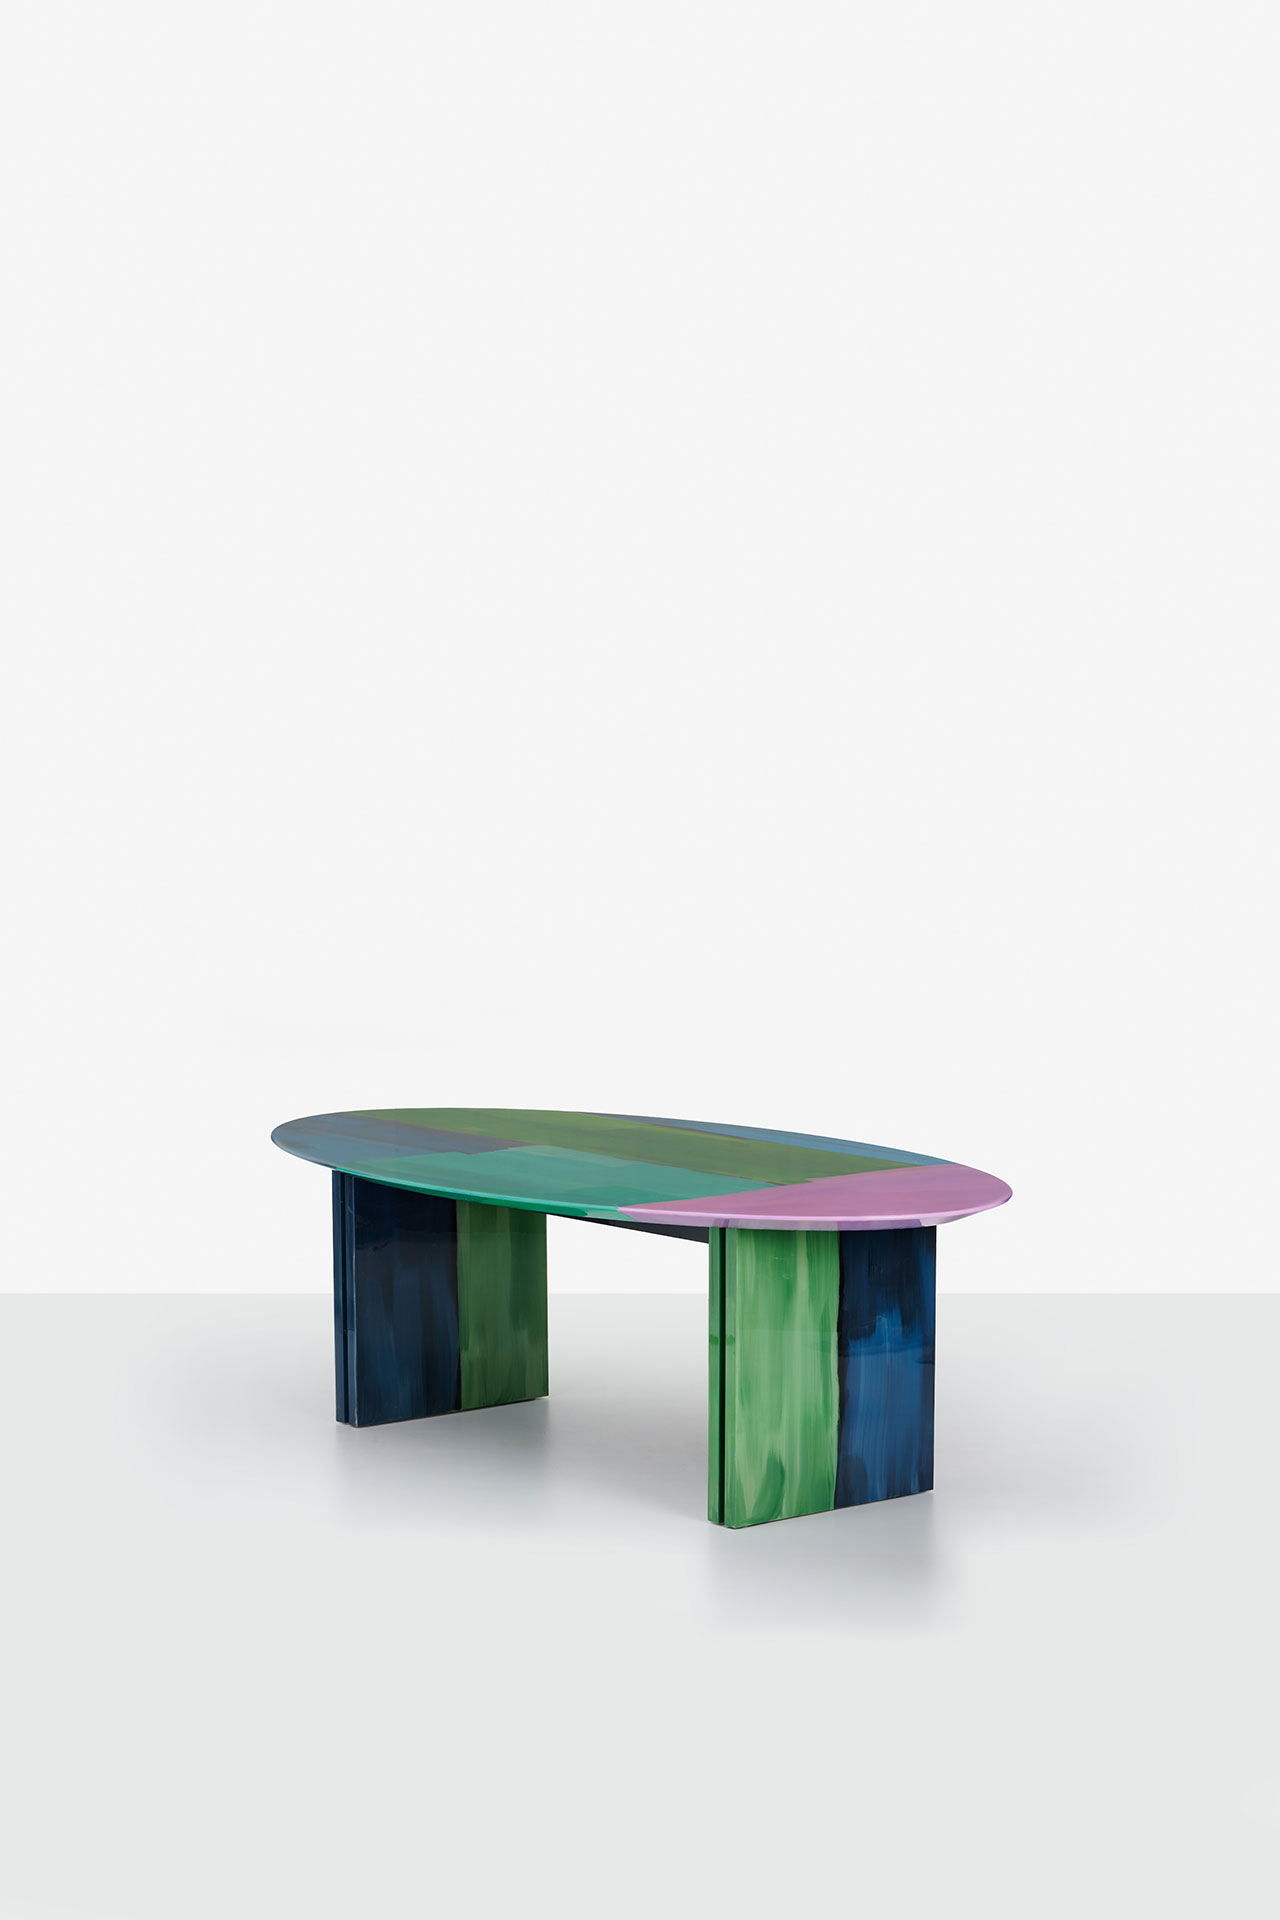 Mensa Table by Filippo Carandini. Photography by Filippo Pincolini.